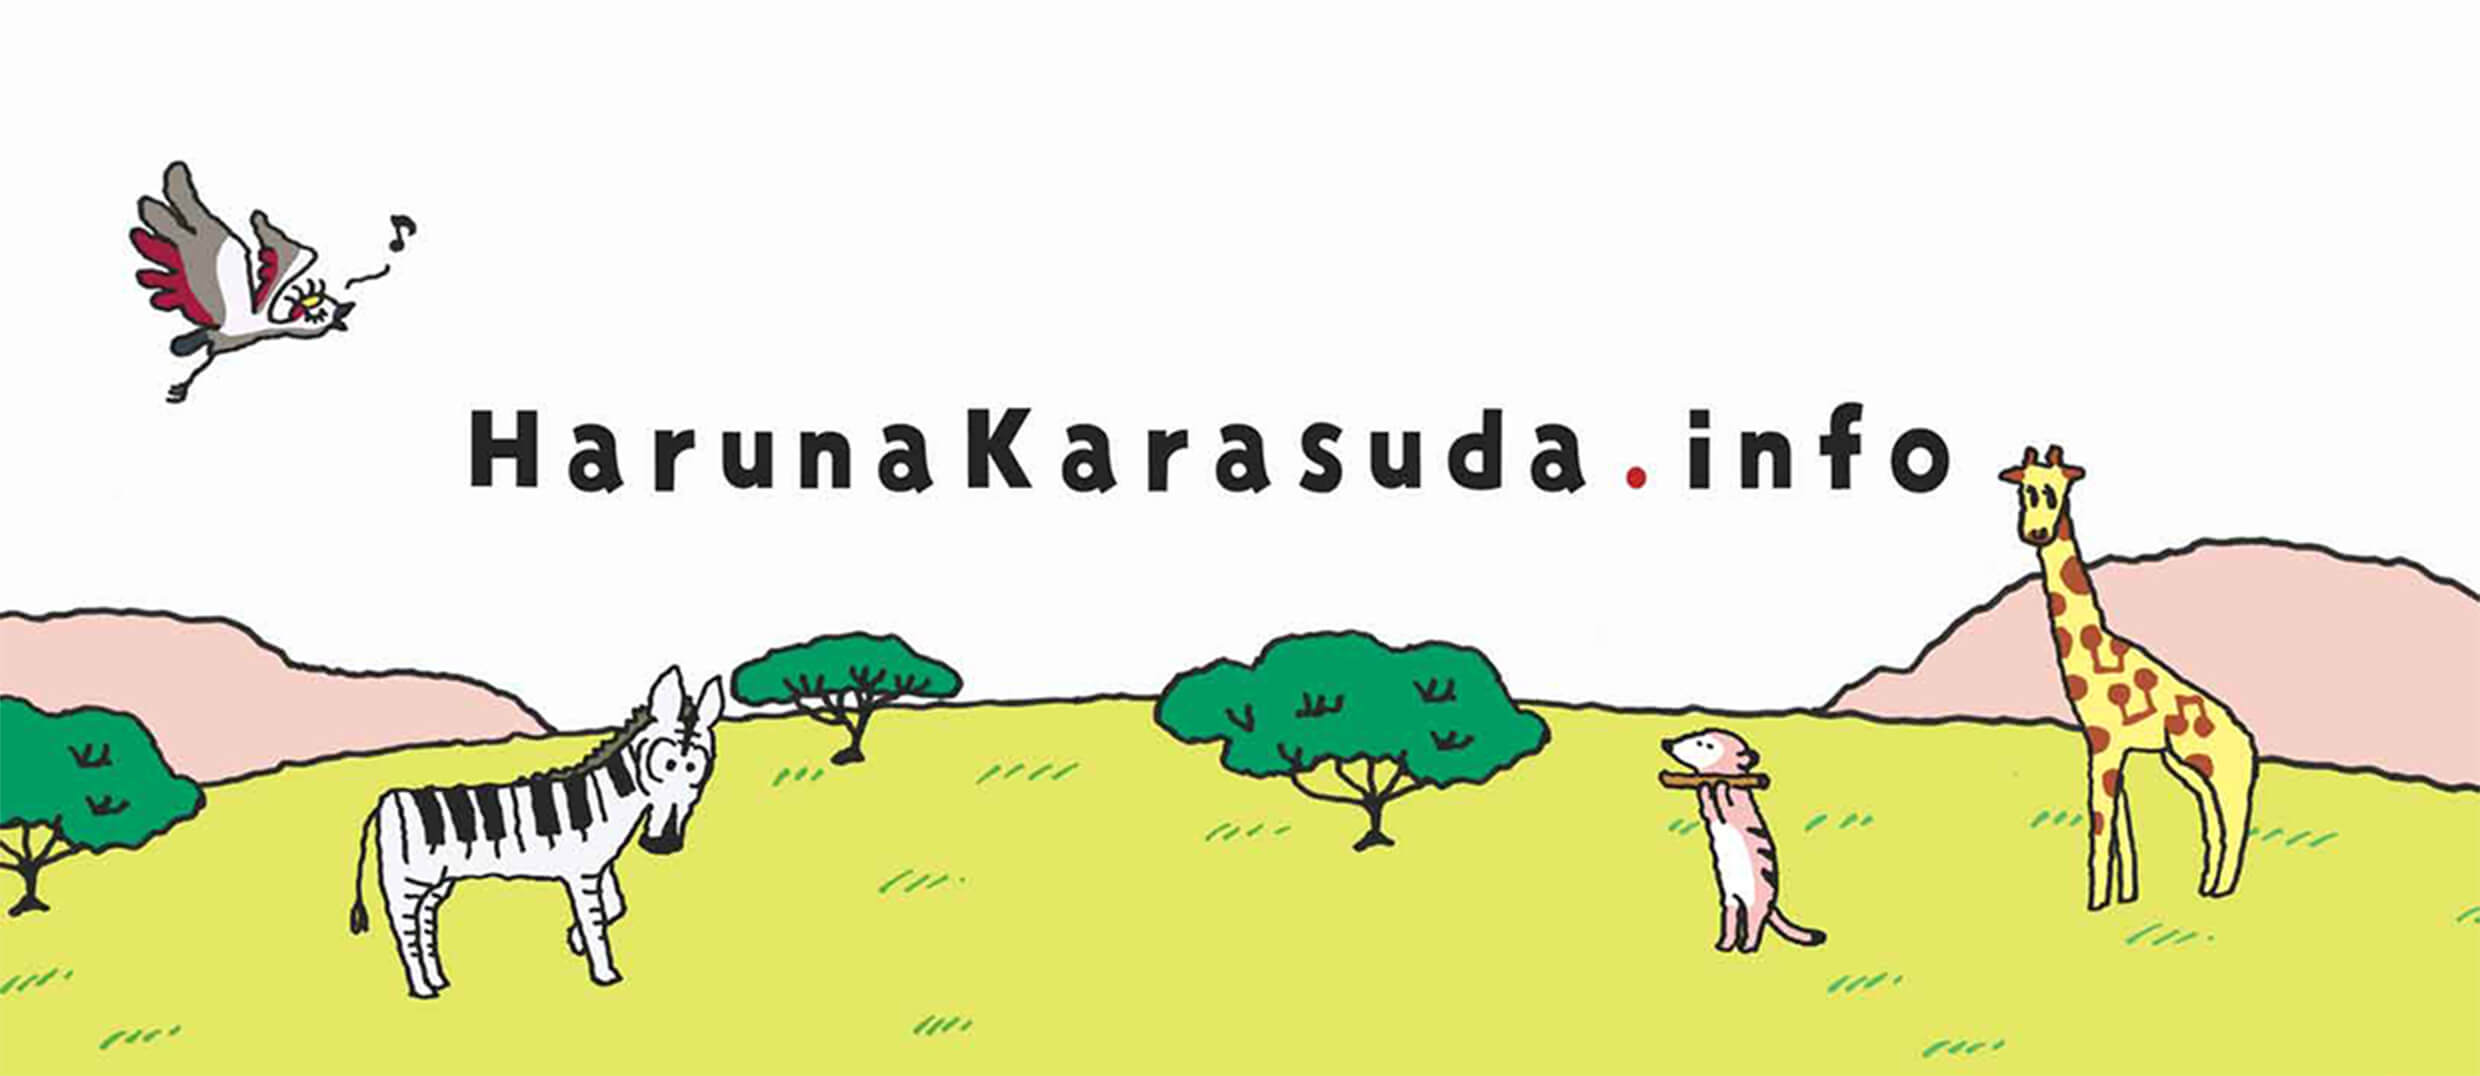 Haruna Karasuda.info